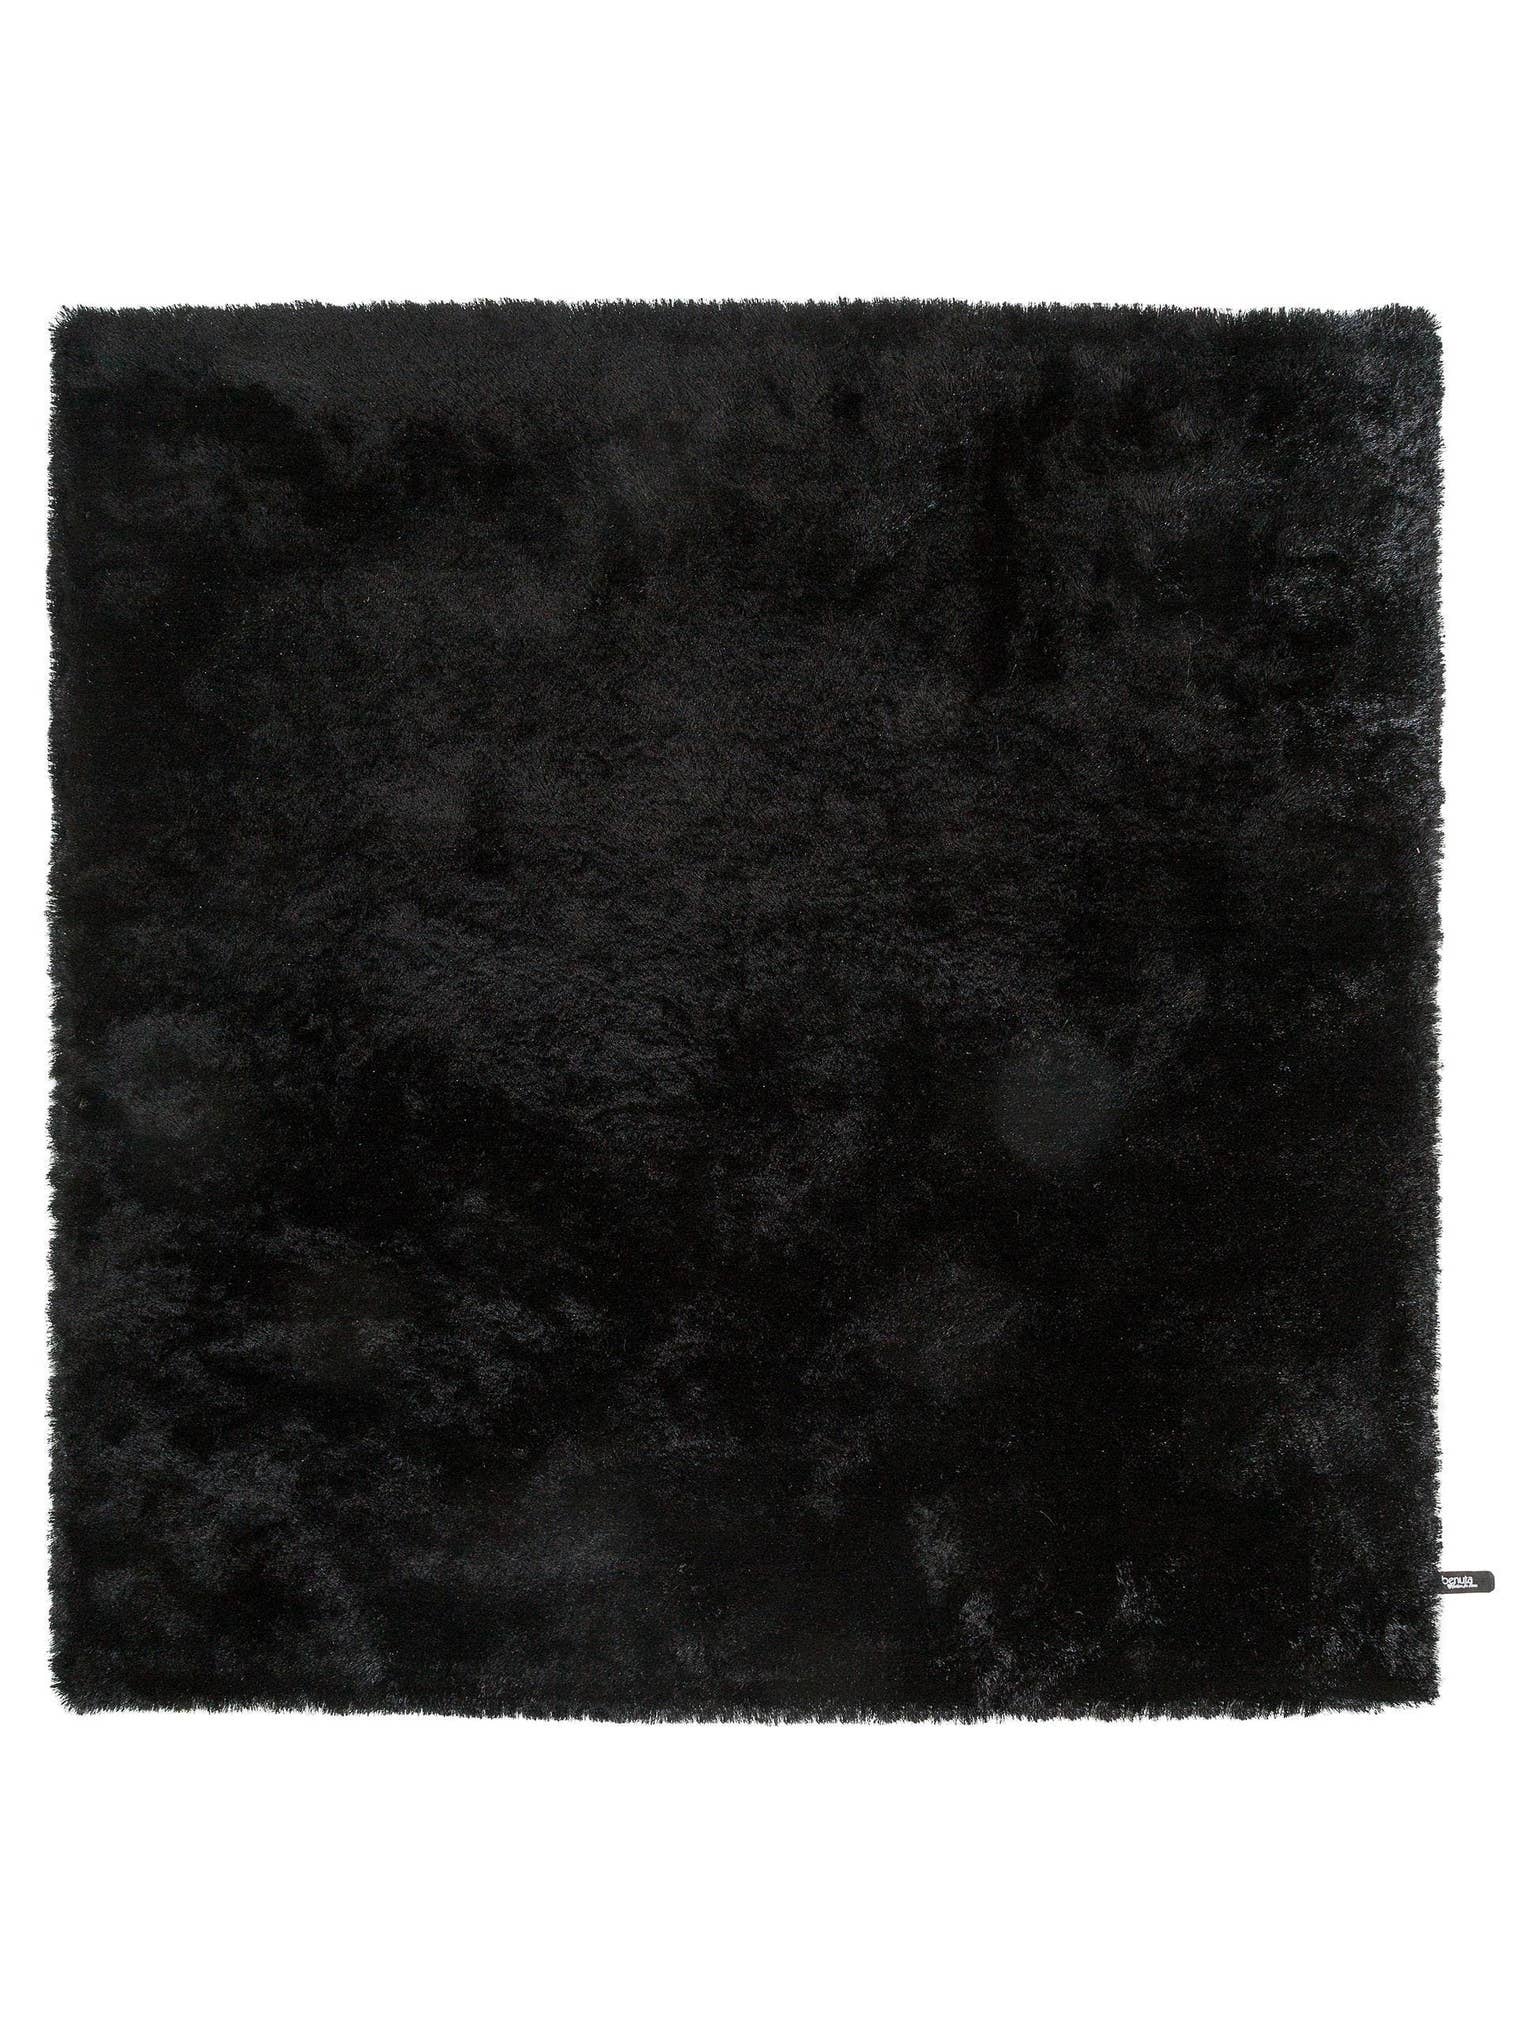 Teppich aus 100% Polyester in Schwarz mit 31 bis 40 mm hohem Flor von benuta Nest